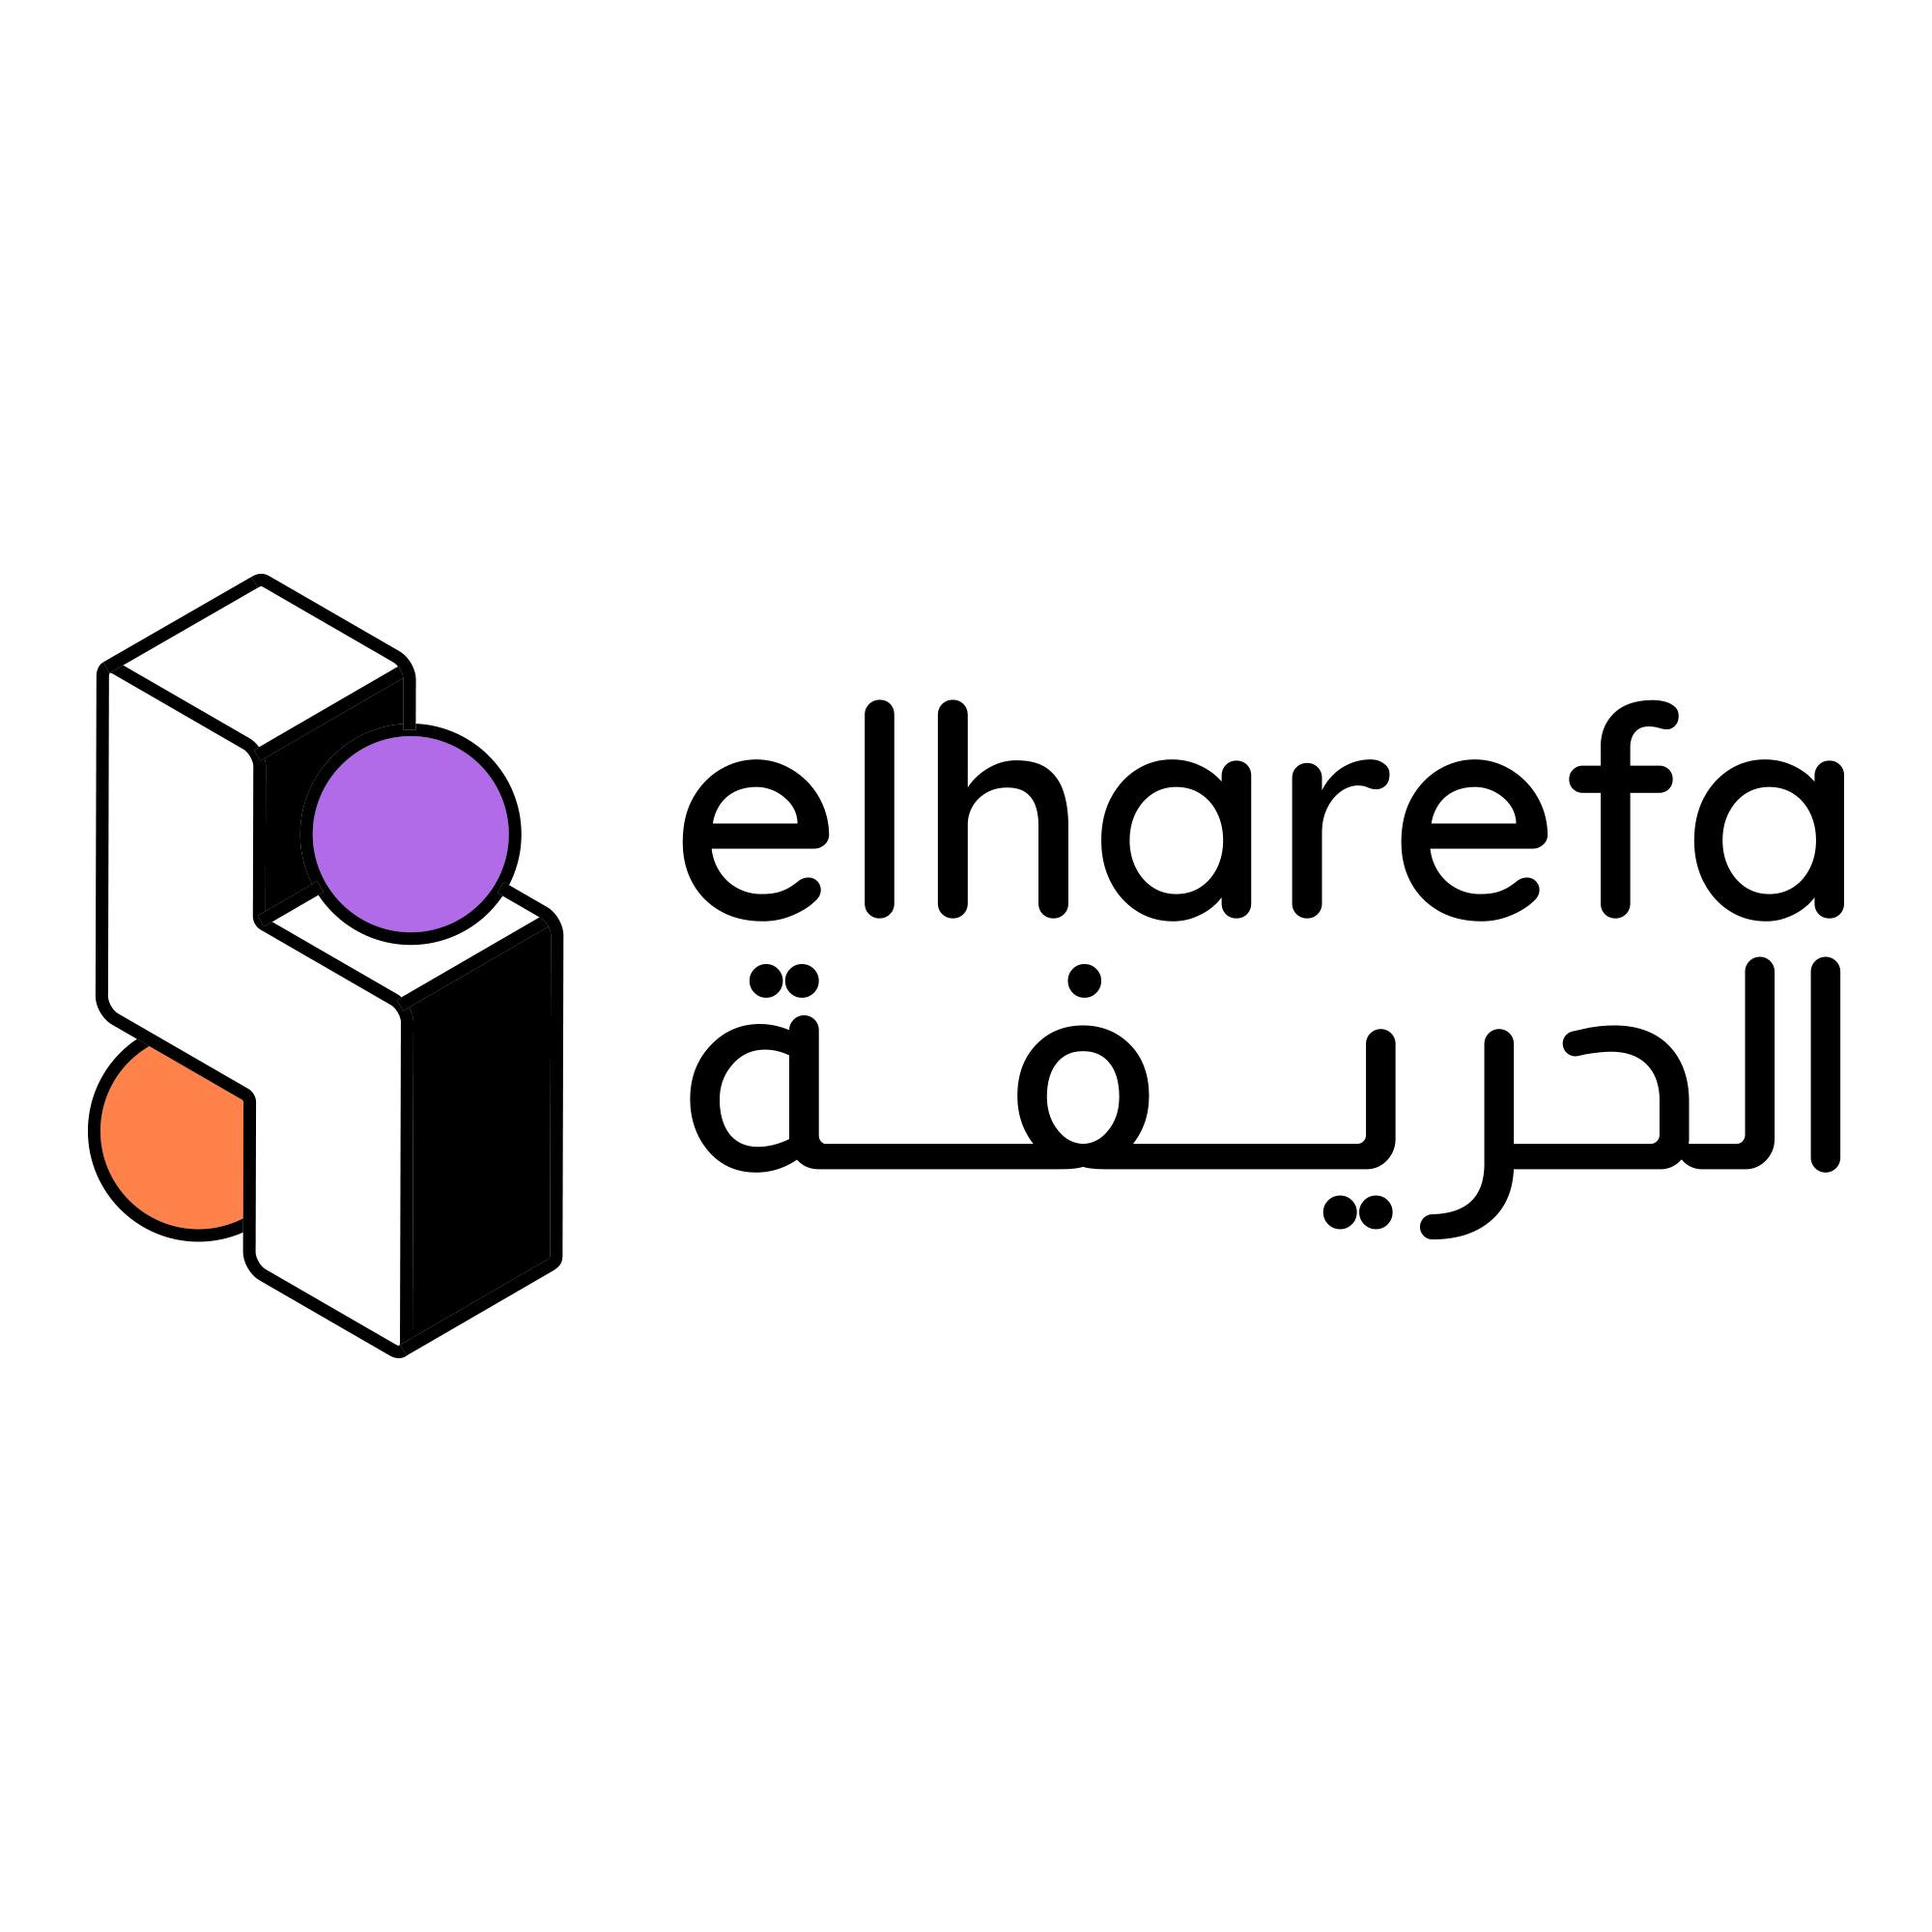 Elharefa